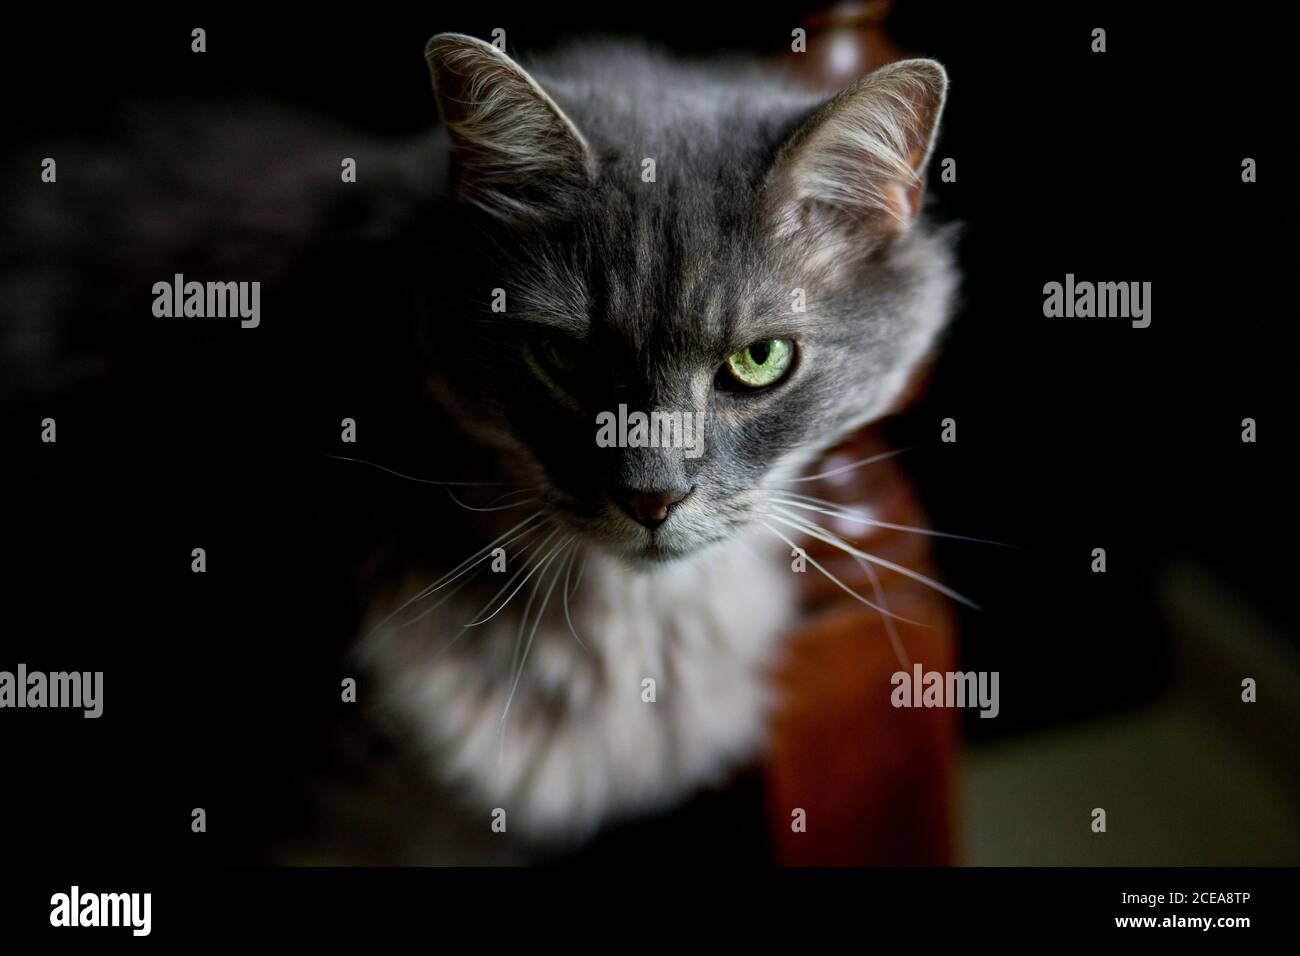 gato gris esponjoso con mirada intensa en la mitad de la luz, ojo verde mirando directamente al espectador Foto de stock